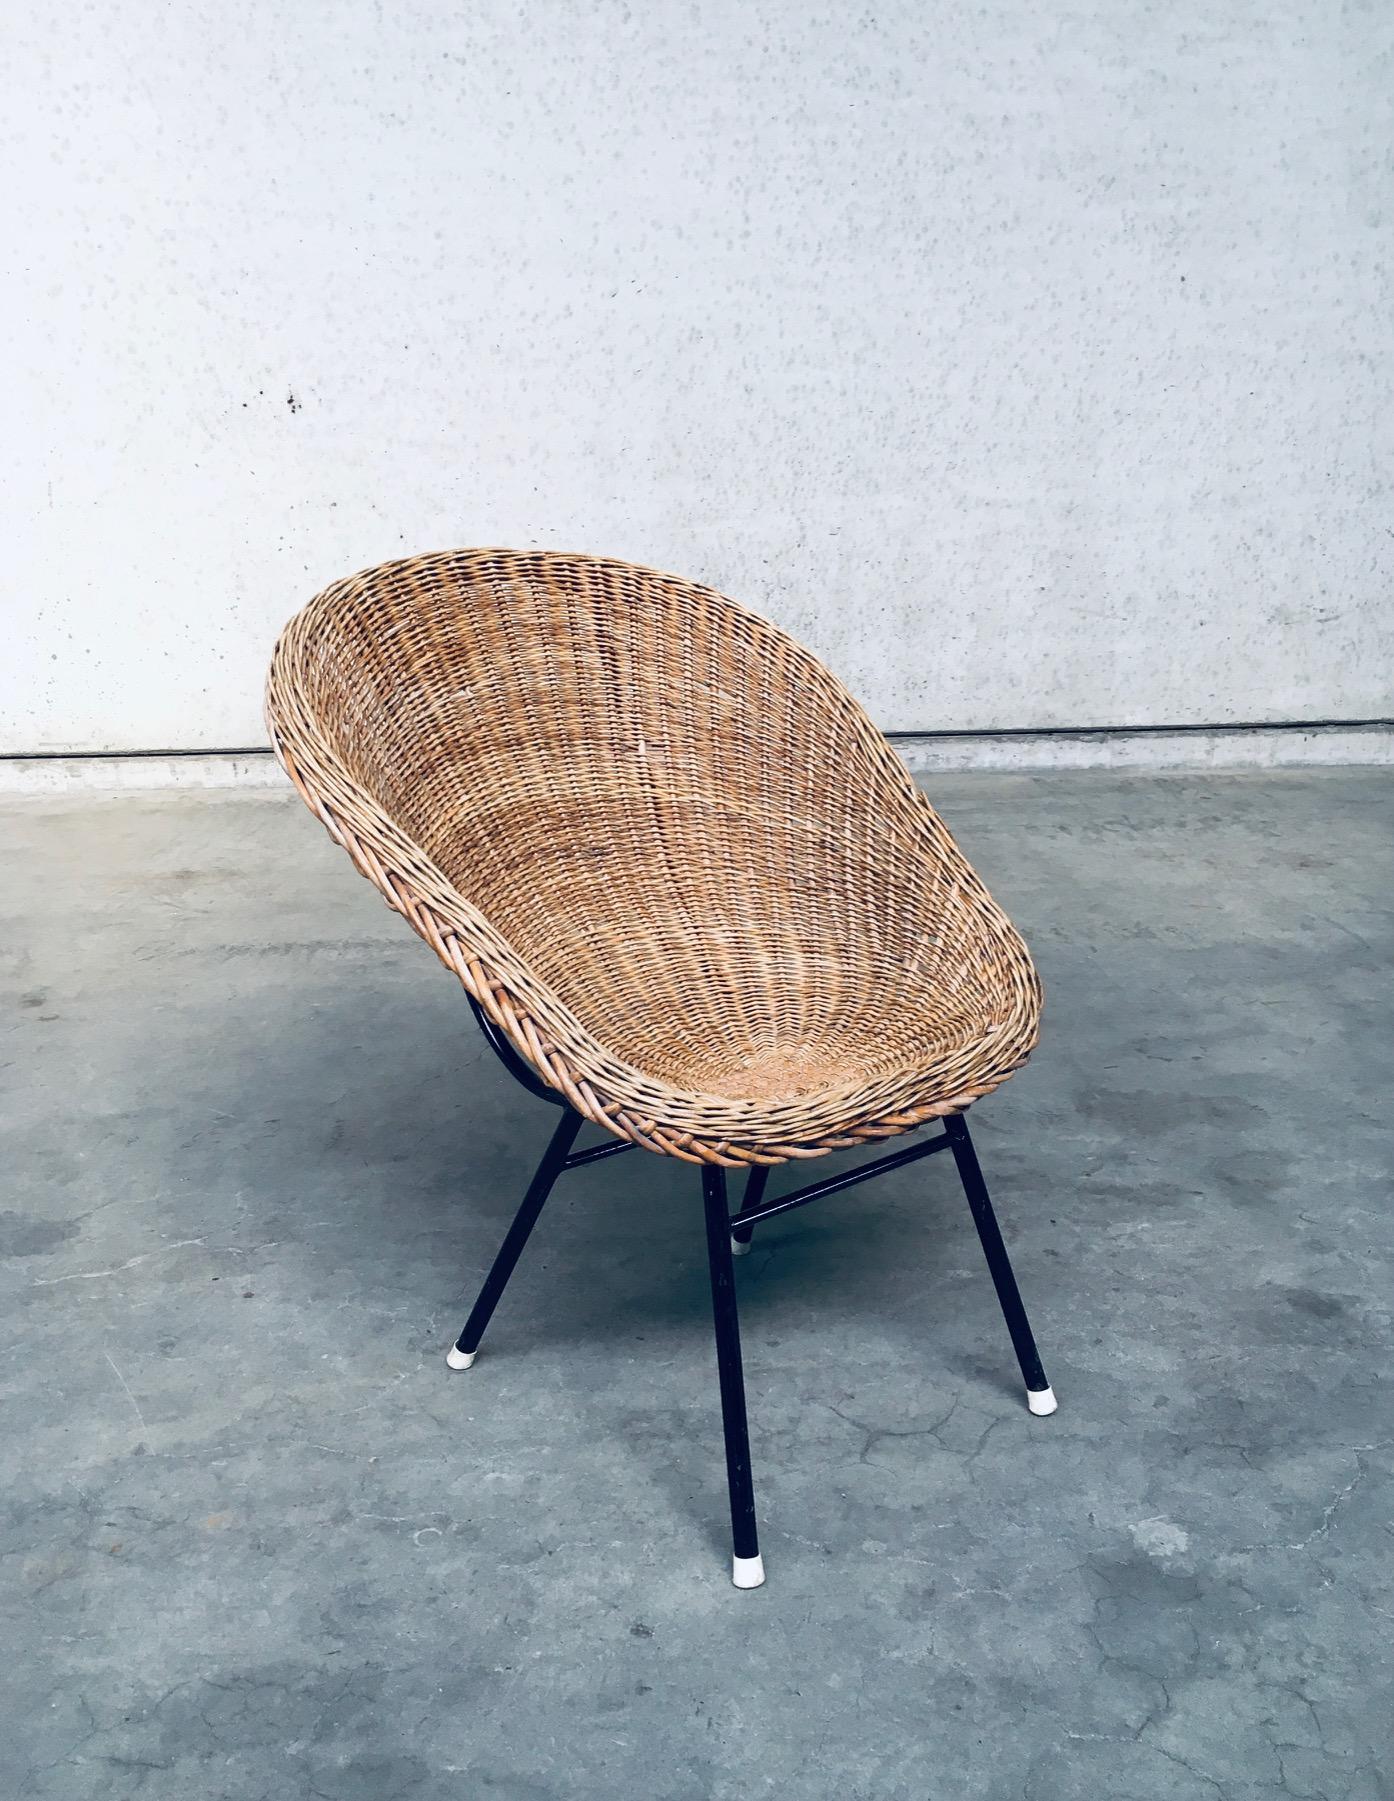 Vintage Midcentury Modern Dutch Design Wicker Lounge Chair in the Style of Dirk Van Sliedregt for Rohé Noordwolde. Fabriqué aux Pays-Bas, dans les années 1960. Assise en rotin de Whiting sur une structure en acier laqué noir, les pieds étant